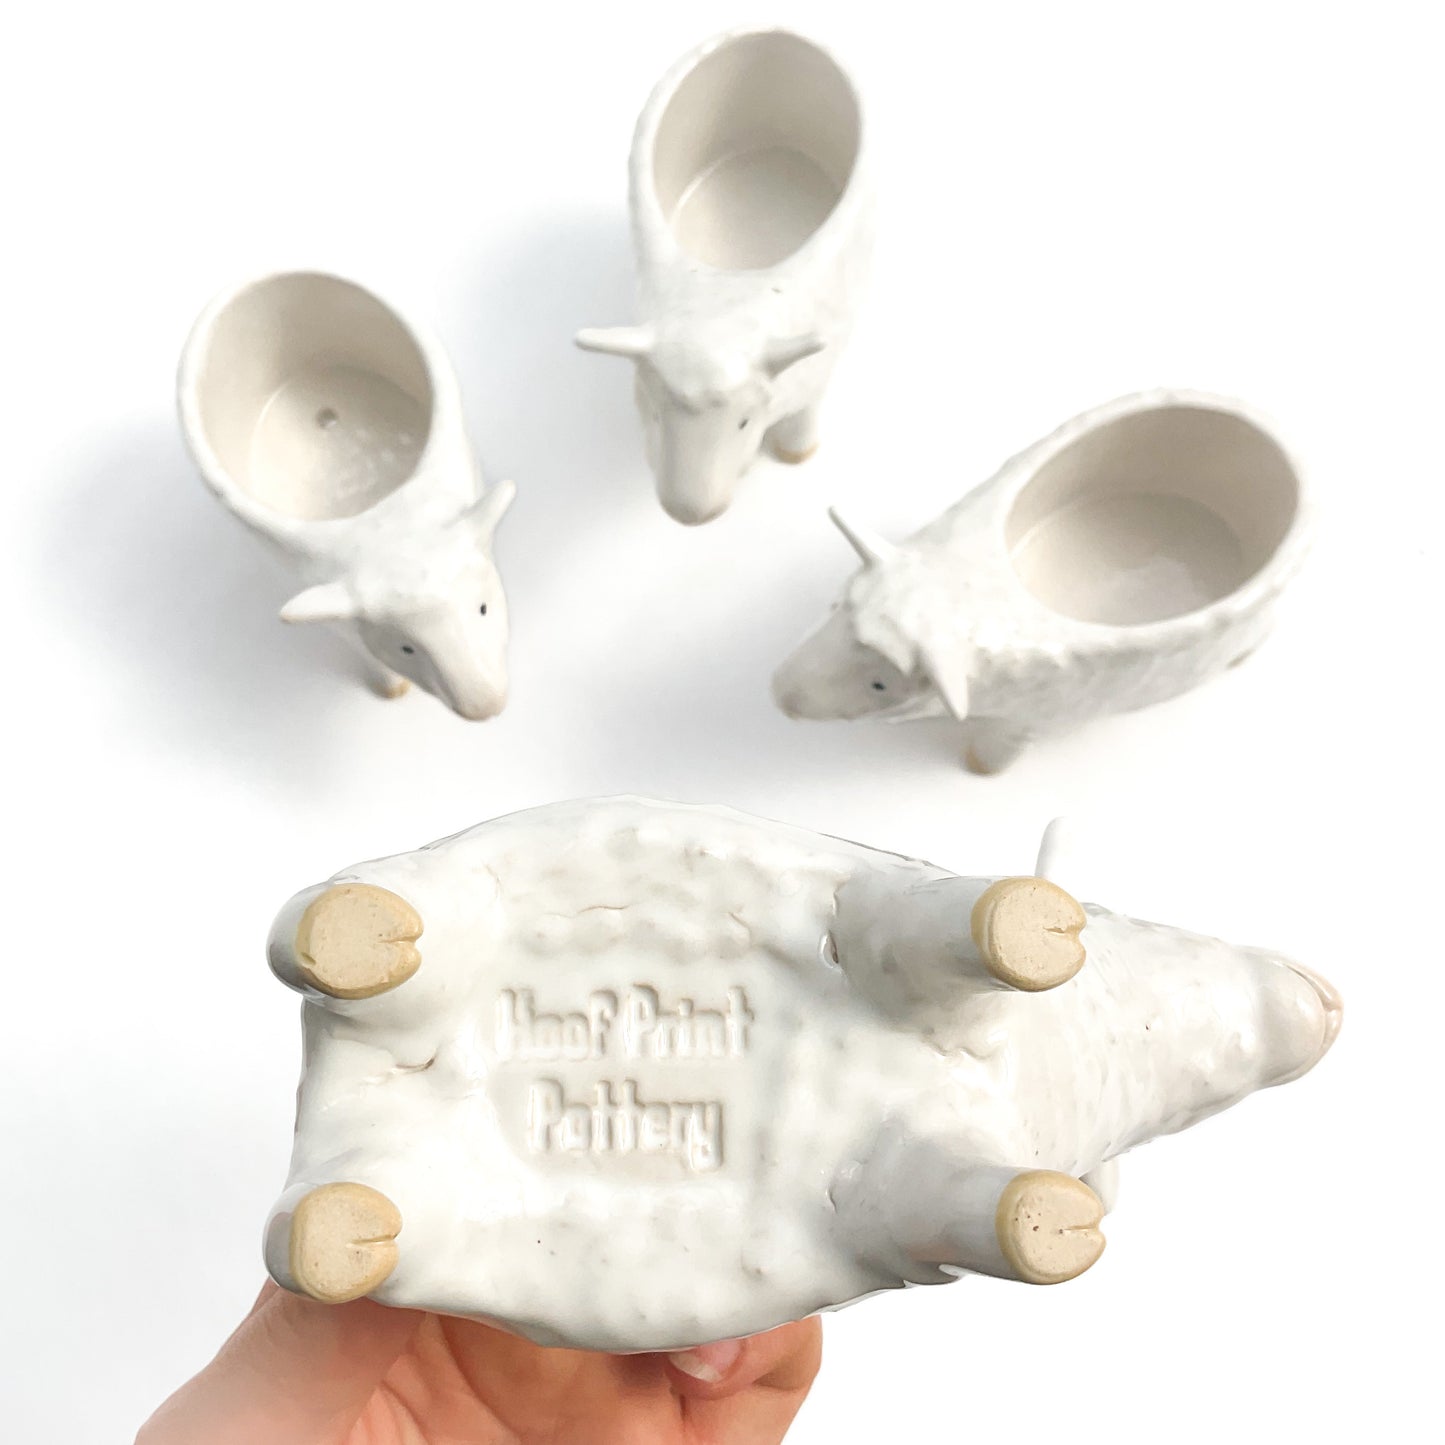 Romney Sheep Pot - Ceramic Sheep Planter